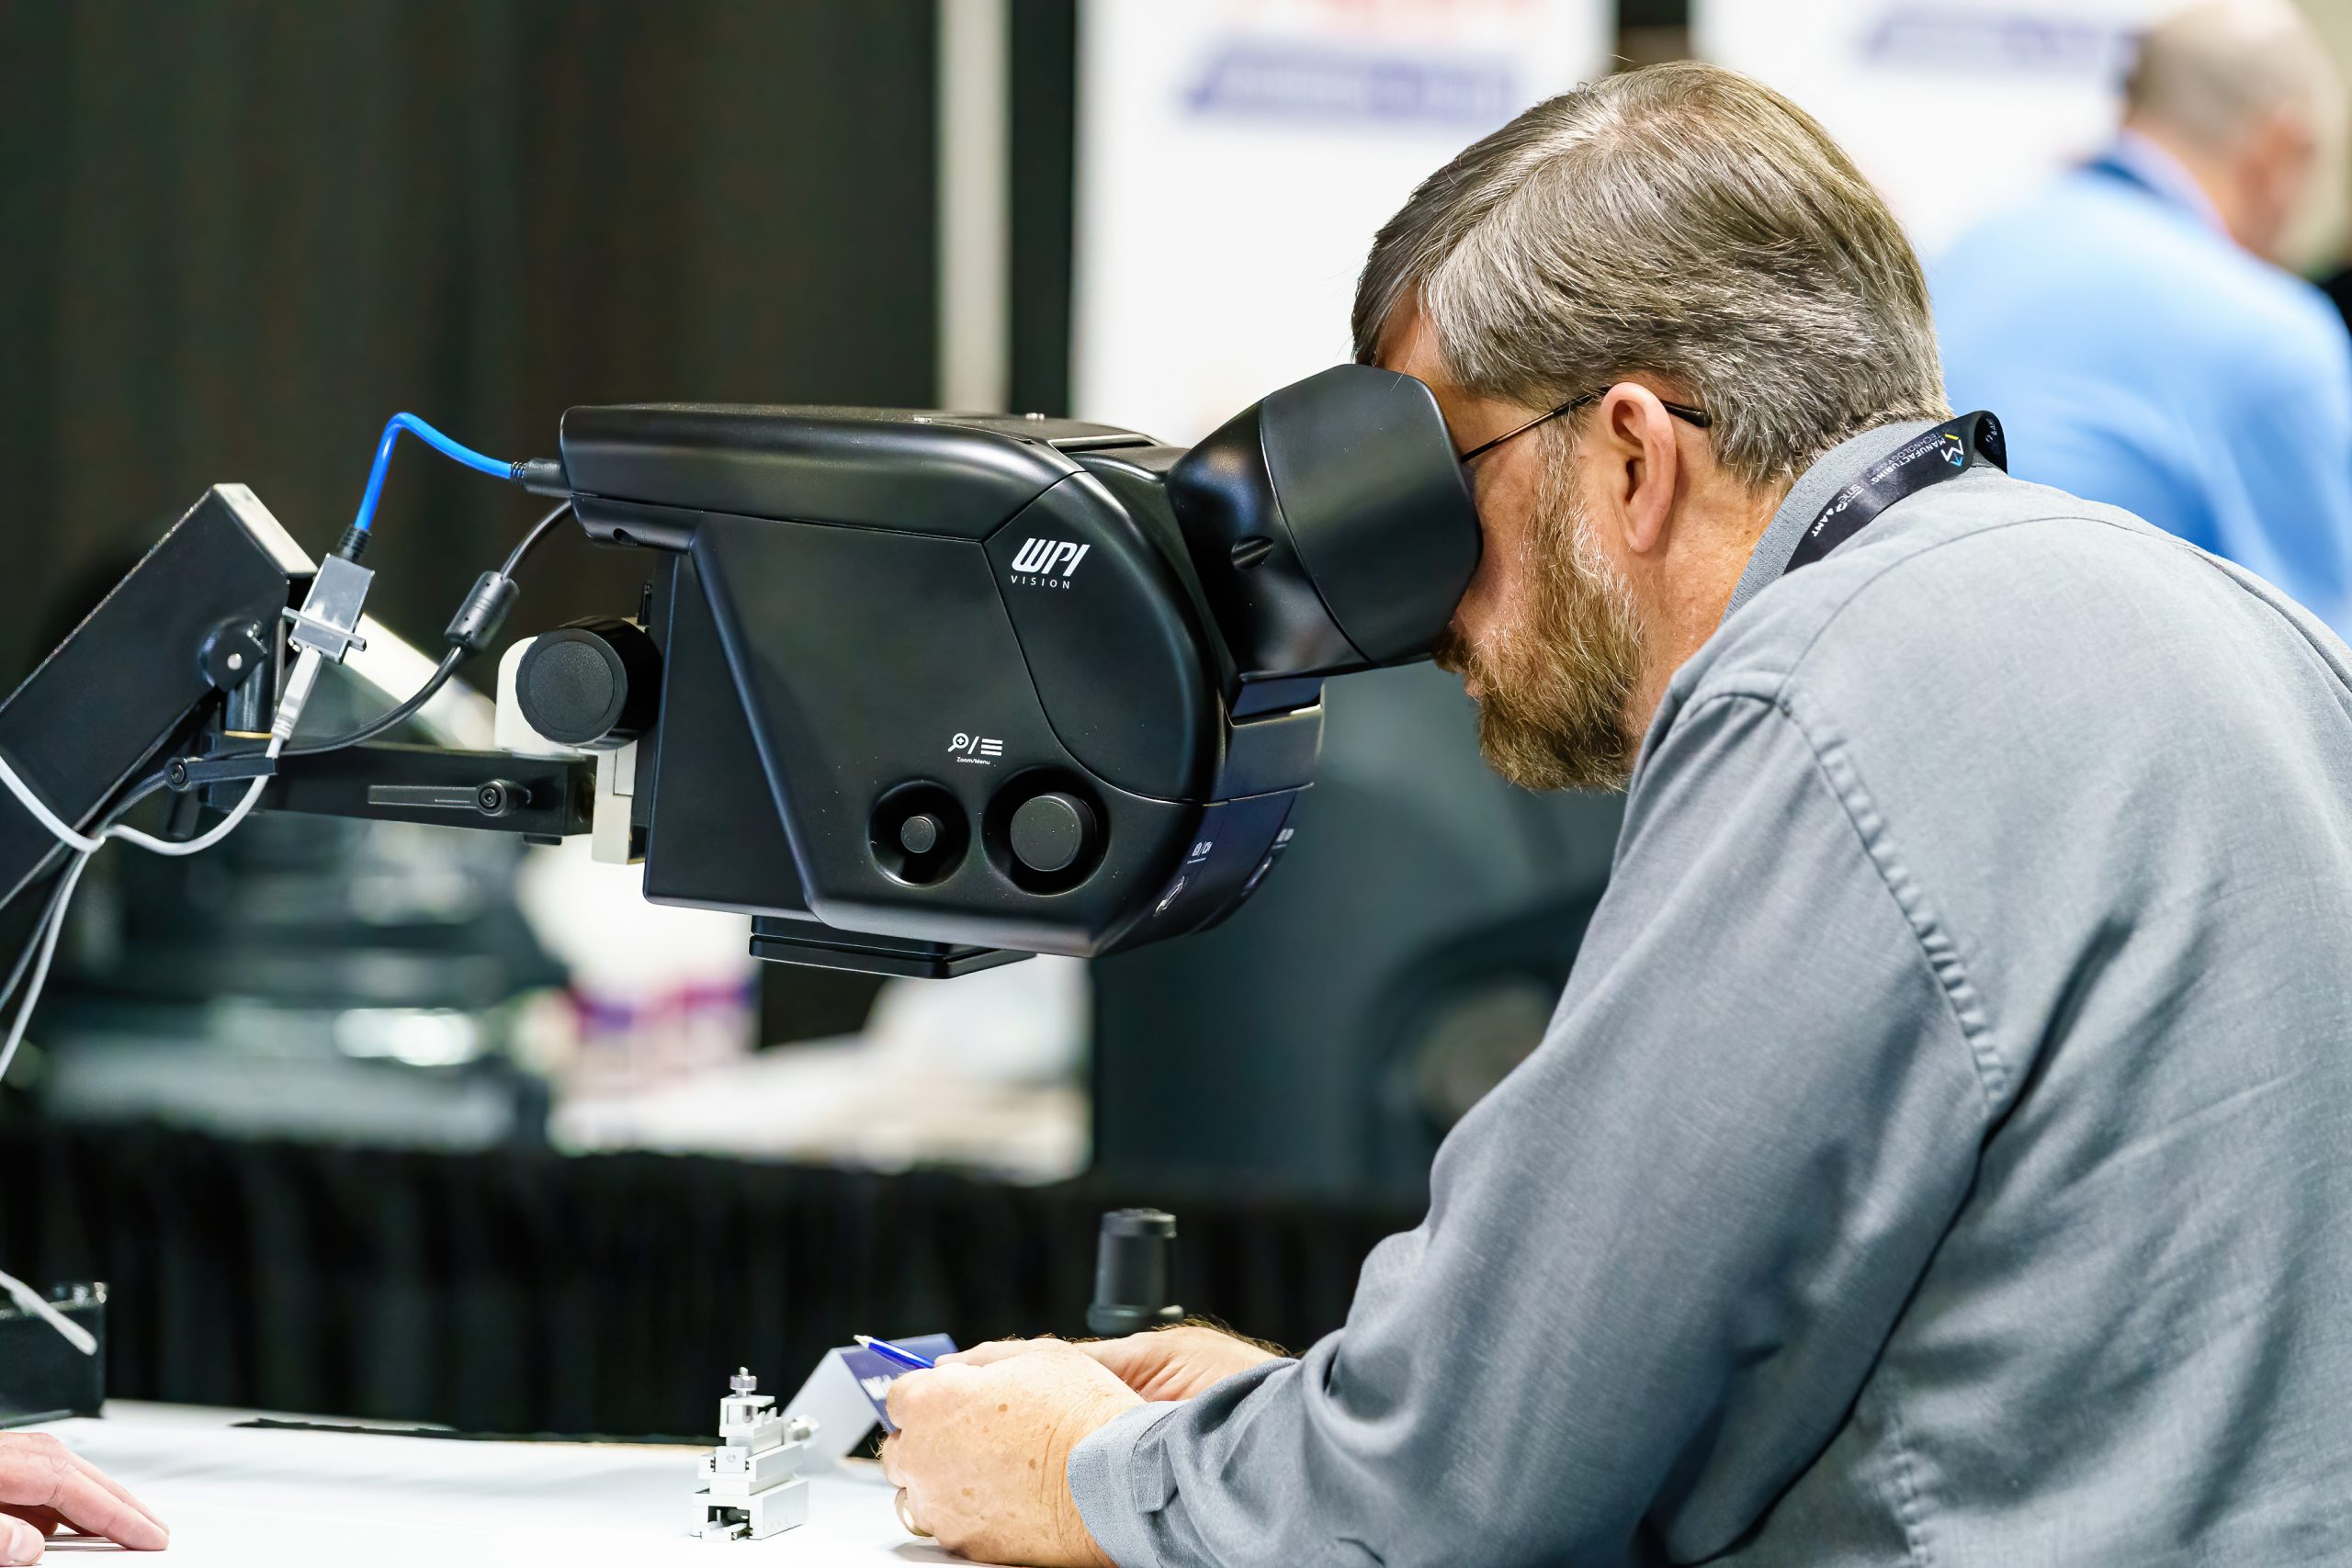 WPI Demos Enhanced Reality Microscope at SMTA Dallas